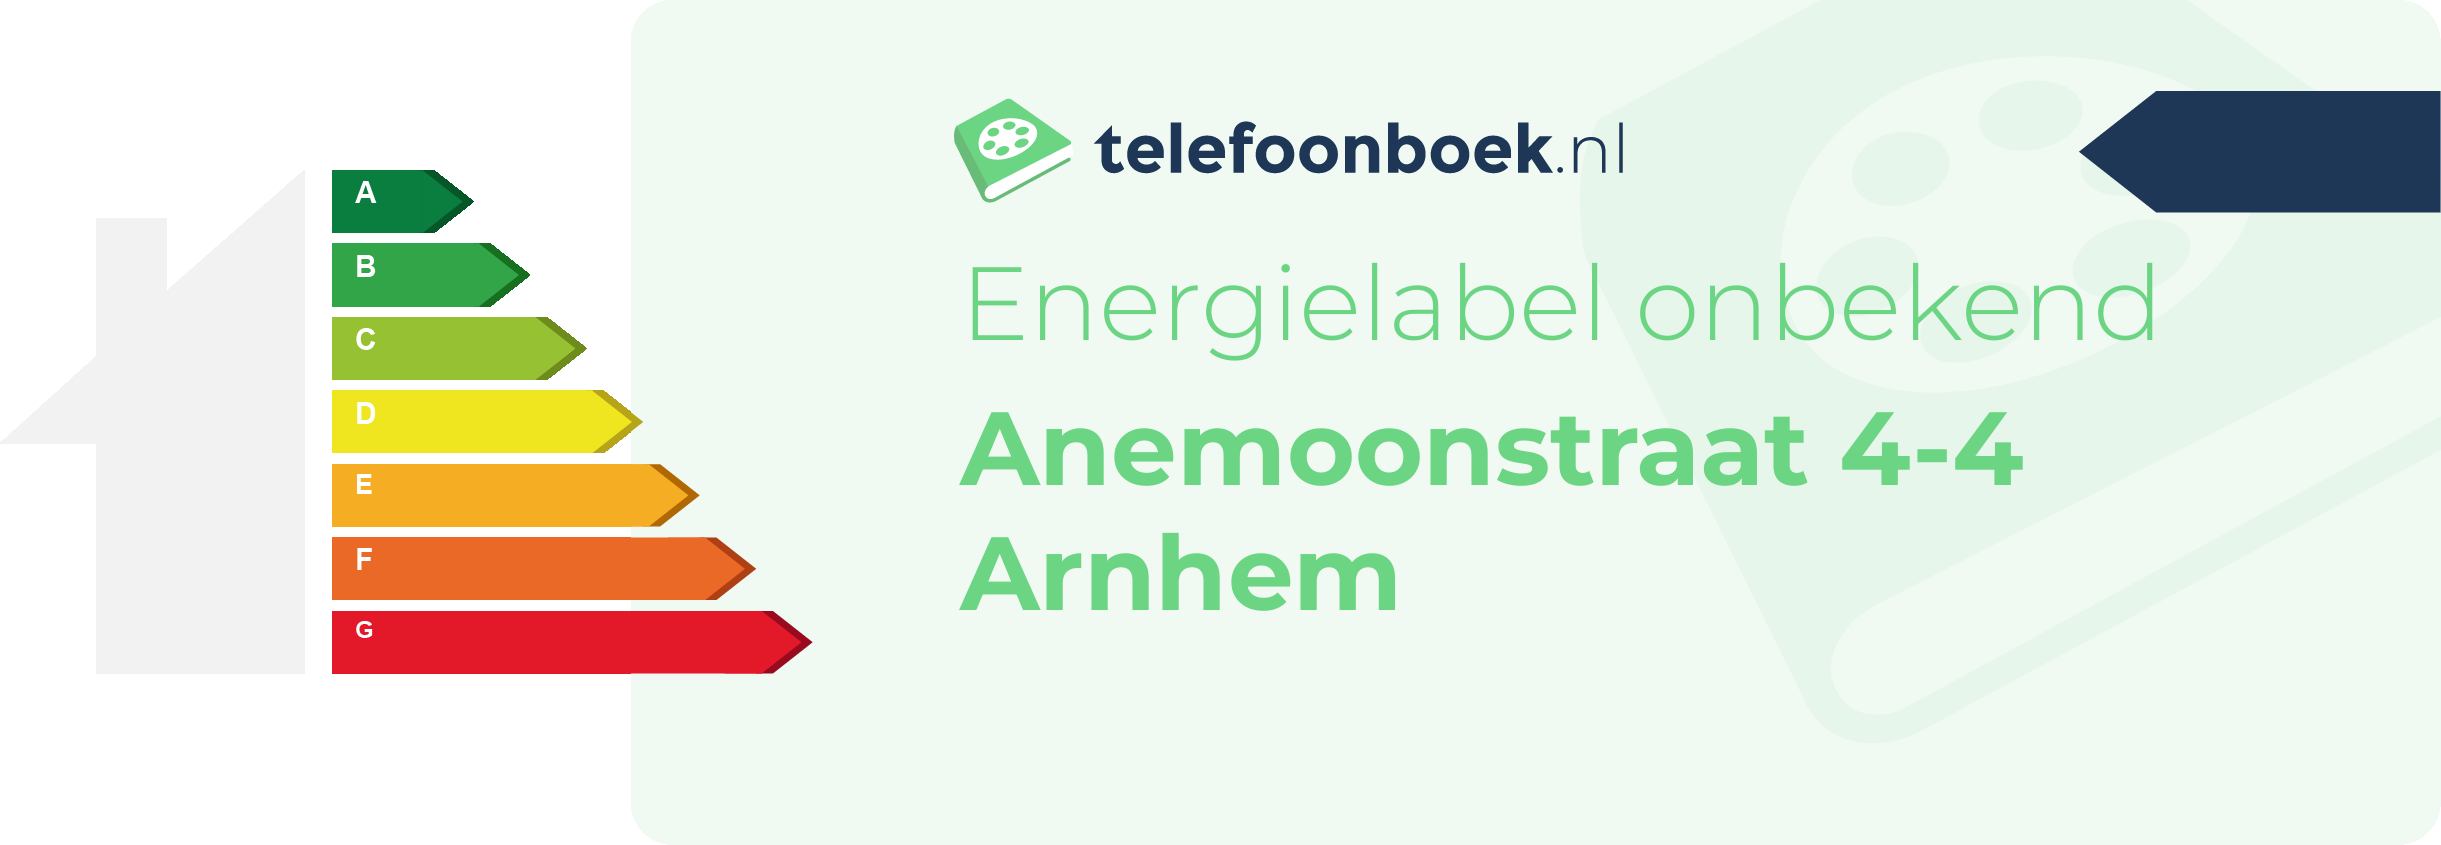 Energielabel Anemoonstraat 4-4 Arnhem